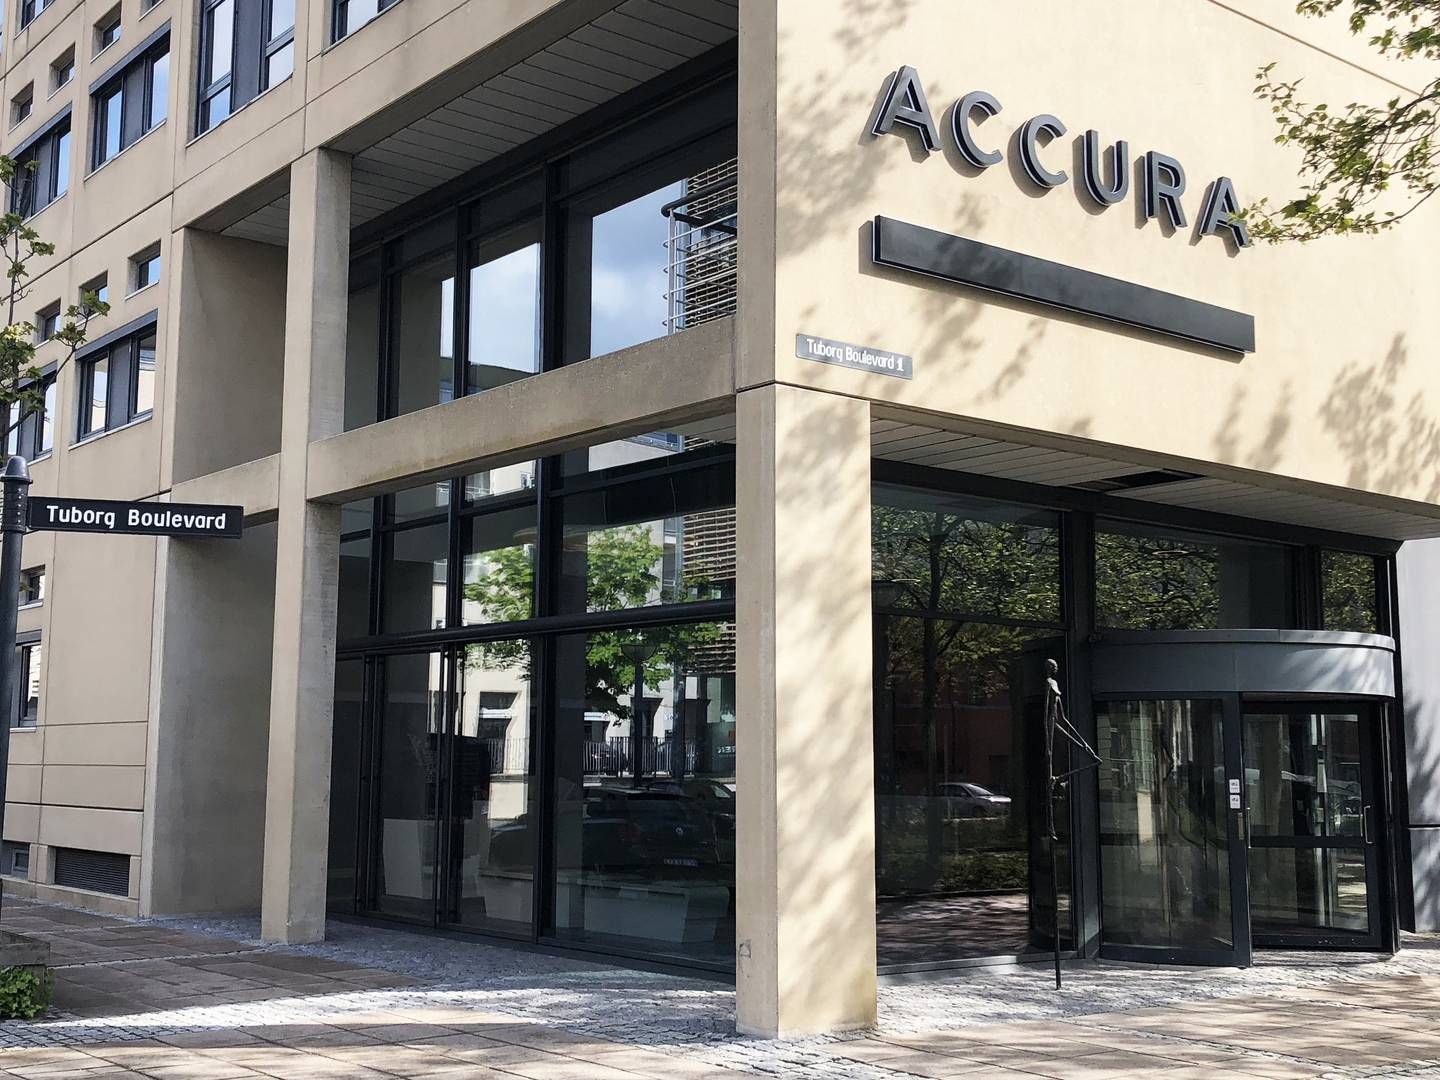 Accura har især fokus på transaktioner, hvor markederne for M&A og fast ejendom var brandvarme i 2021. | Foto: Accura / PR